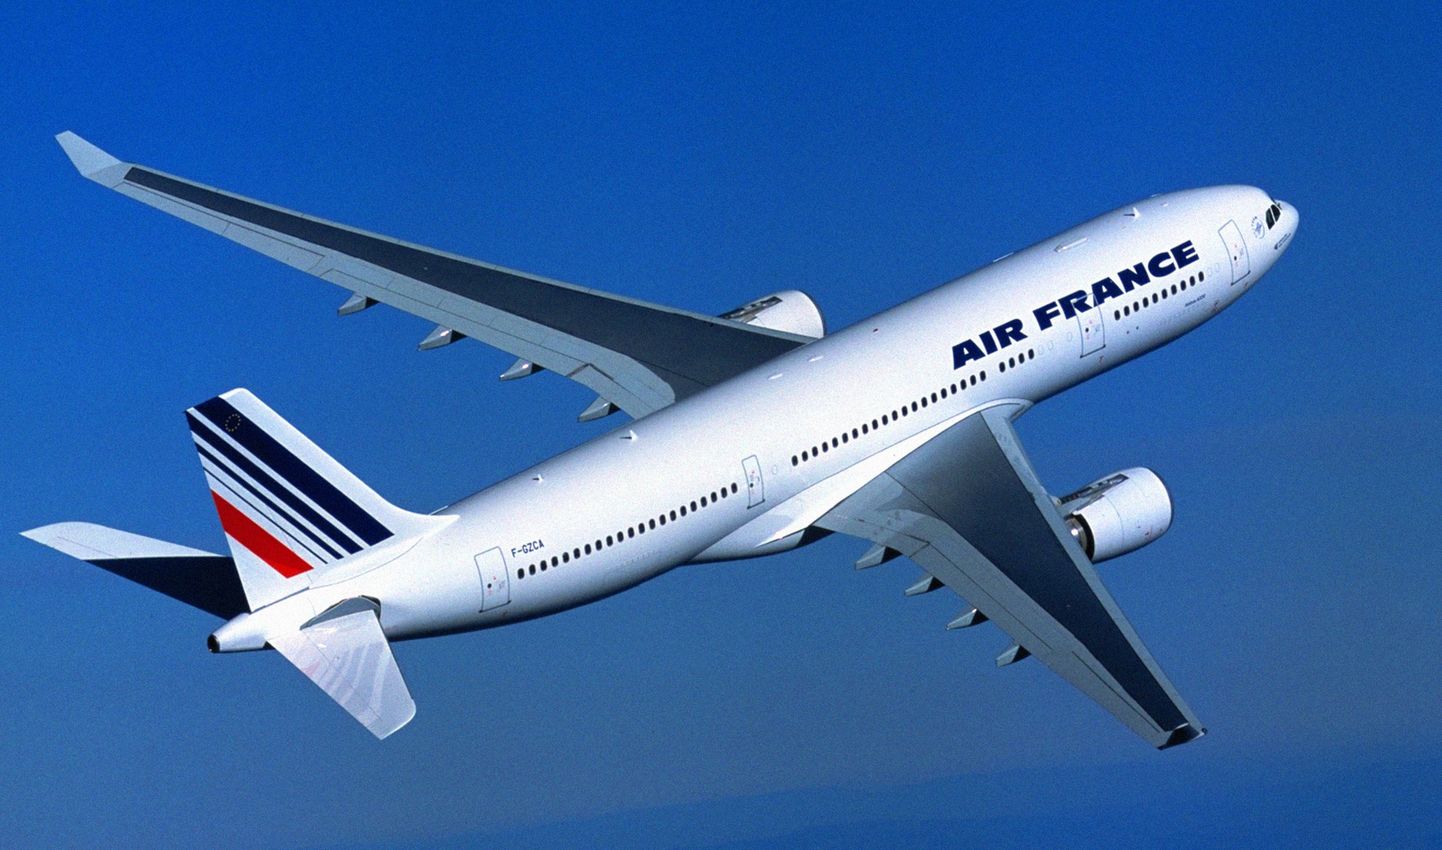 Air France'i Airbus A330-200.